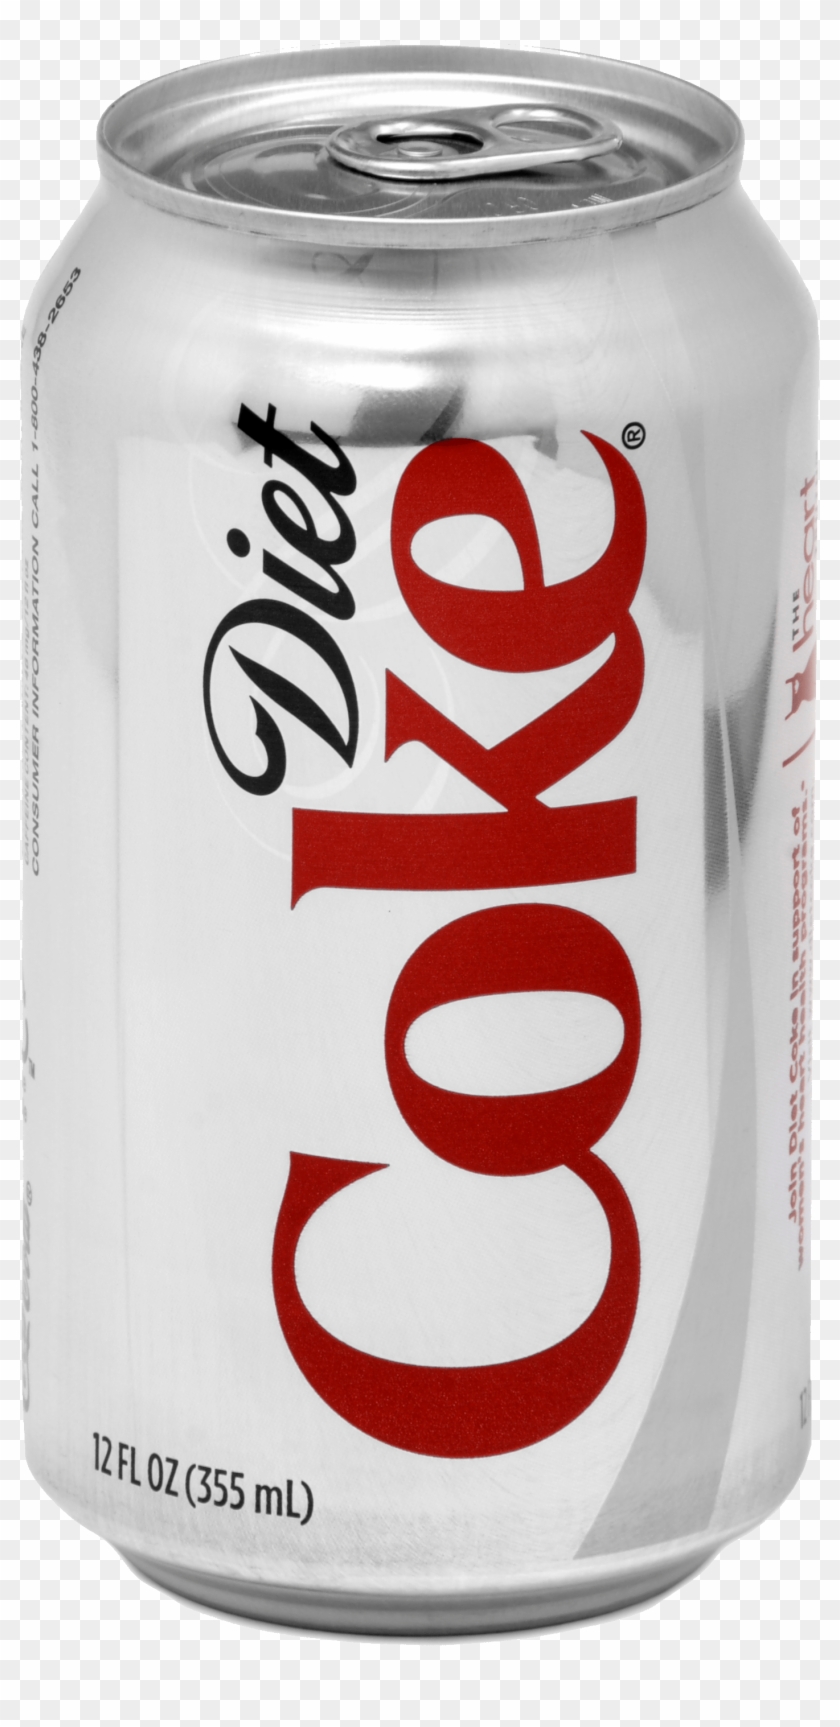 Diet Coke Coca Cola - Diet Coke Can Png Clipart #4660